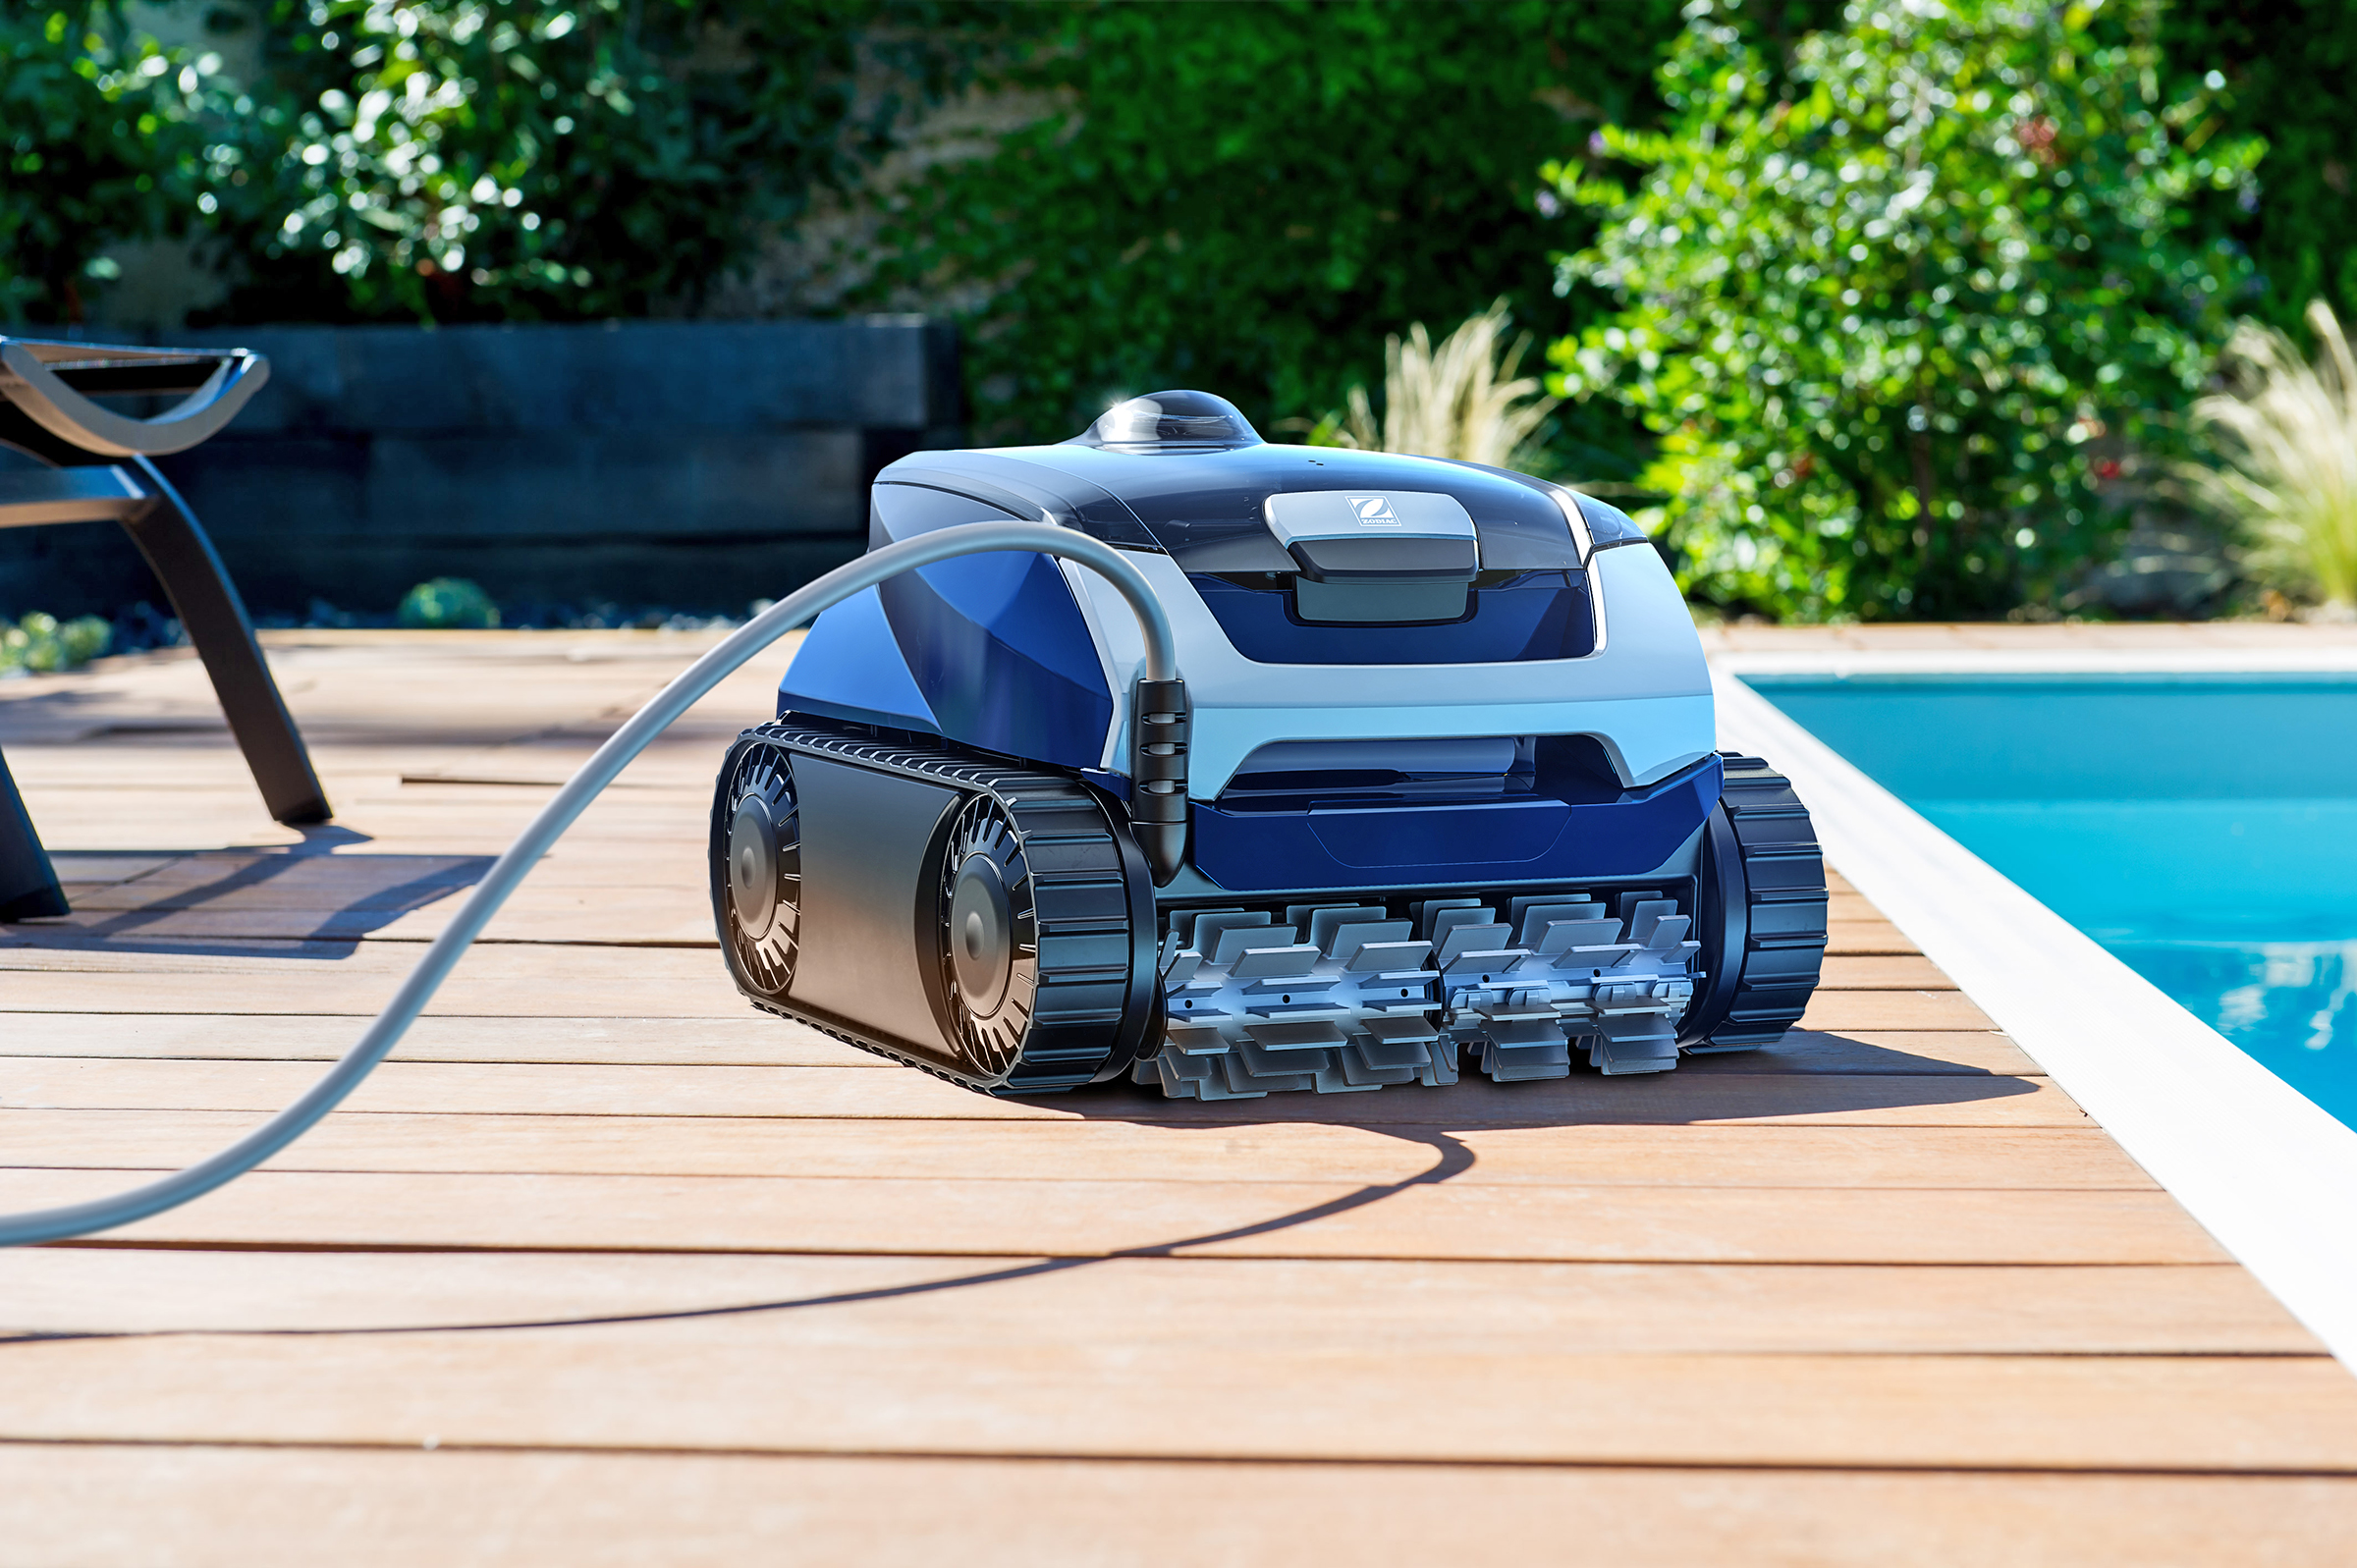 Robot fond, parois et ligne d'eau Zodiac CNX 2020 pour piscine